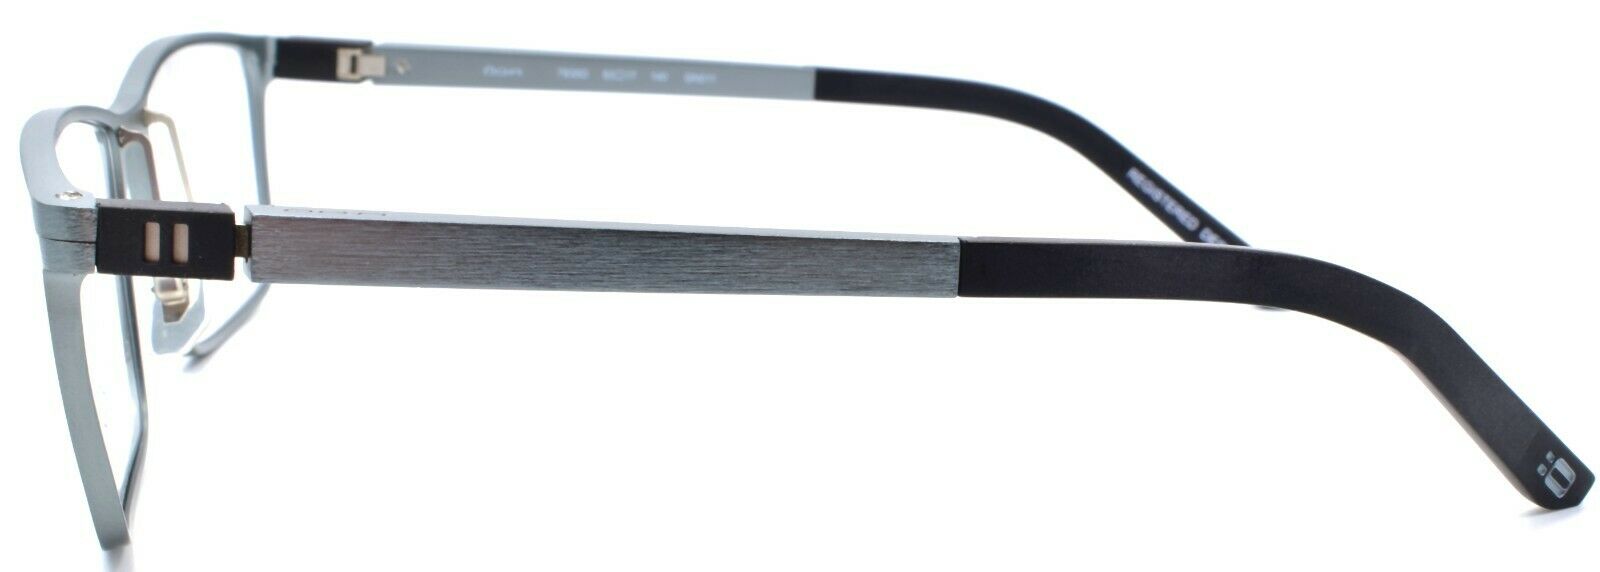 3-OGA by Morel 7935O GN011 Men's Eyeglasses Frames Aluminum 53-17-140 Slate Grey-3604770887488-IKSpecs